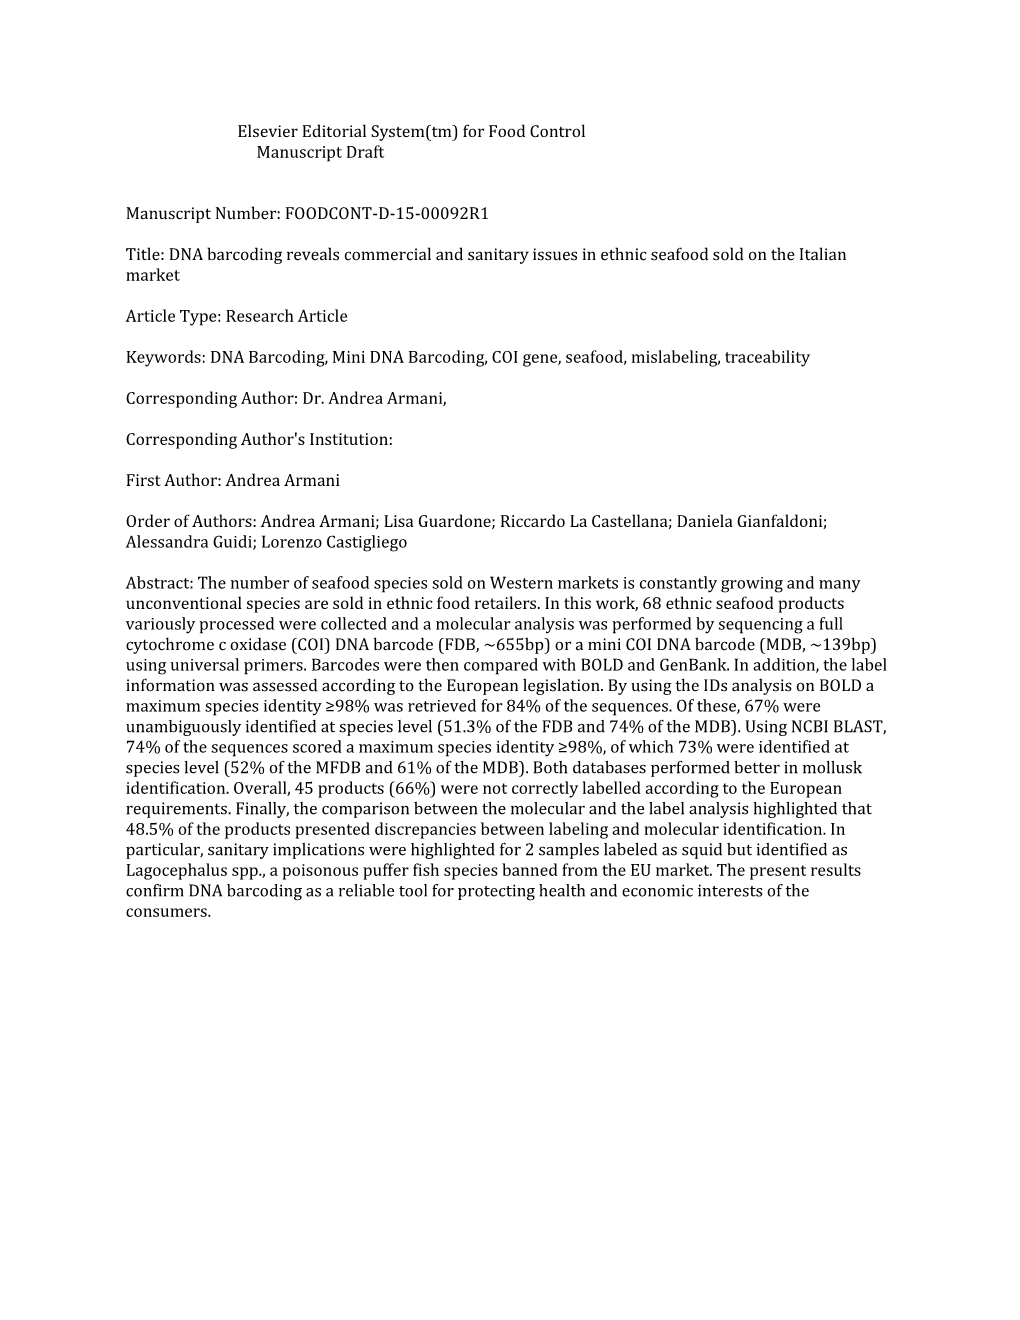 Elsevier Editorial System(Tm) for Food Control Manuscript Draft